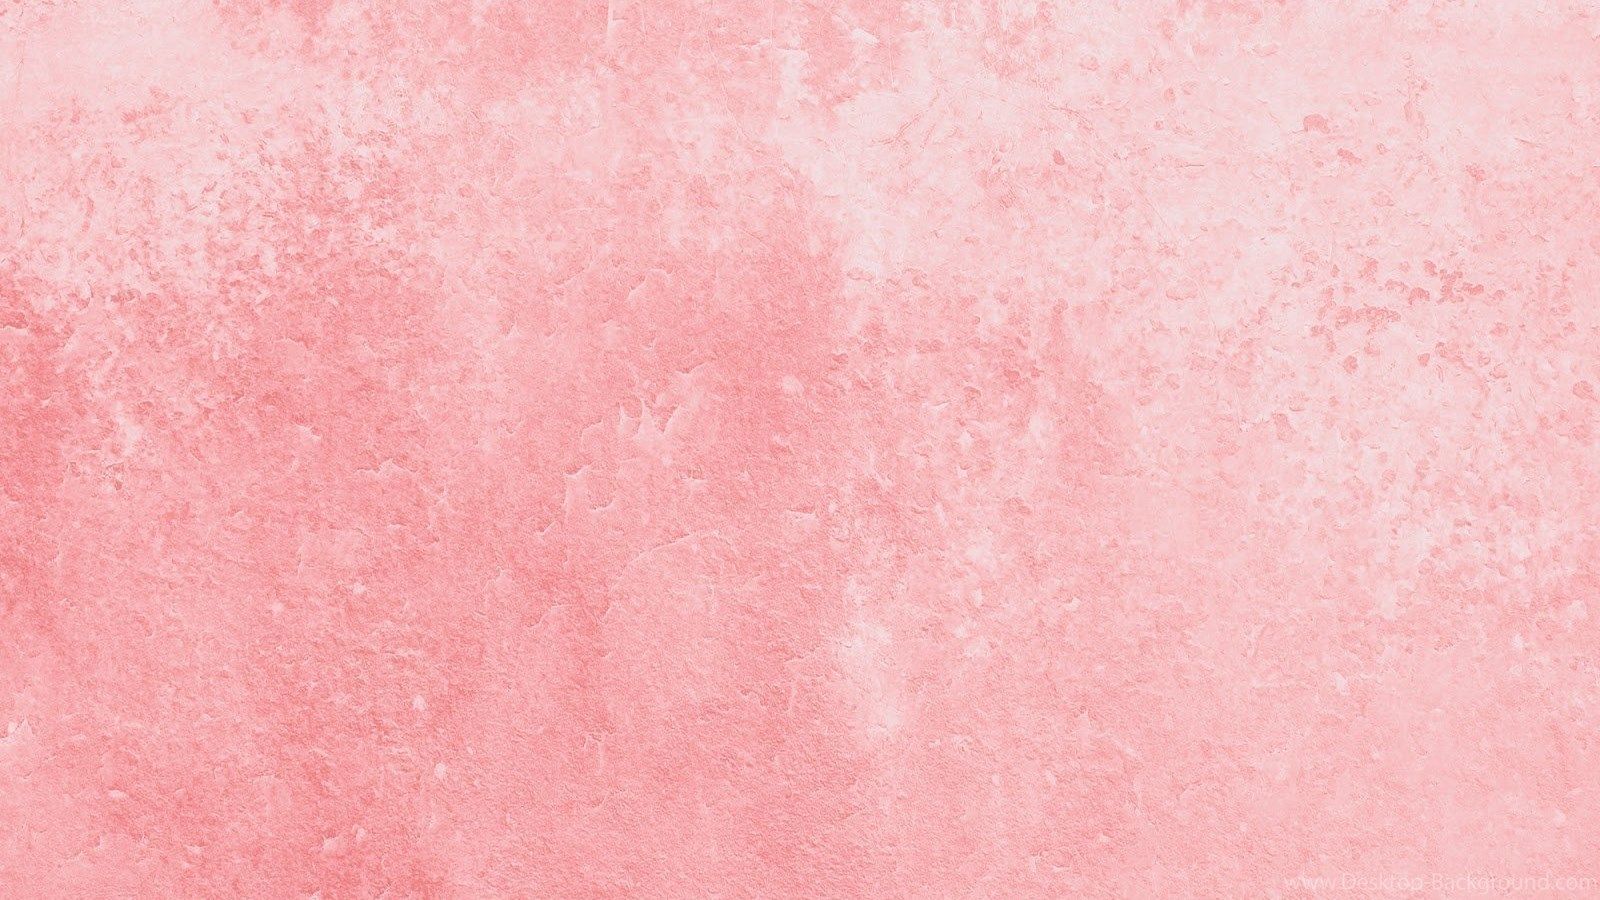 Màu hồng pastel sẽ mang lại cho những ai yêu thích sự nhẹ nhàng, tinh tế và nữ tính cảm giác thỏa mãn. Hãy khám phá bộ sưu tập các ảnh nền Pink Aesthetic Wallpapers với tông màu pastel nhẹ nhàng của chúng. Thiết kế đơn giản và sắc nét, mọi người đều có thể tìm được bức ảnh nền hoàn hảo cho riêng mình.